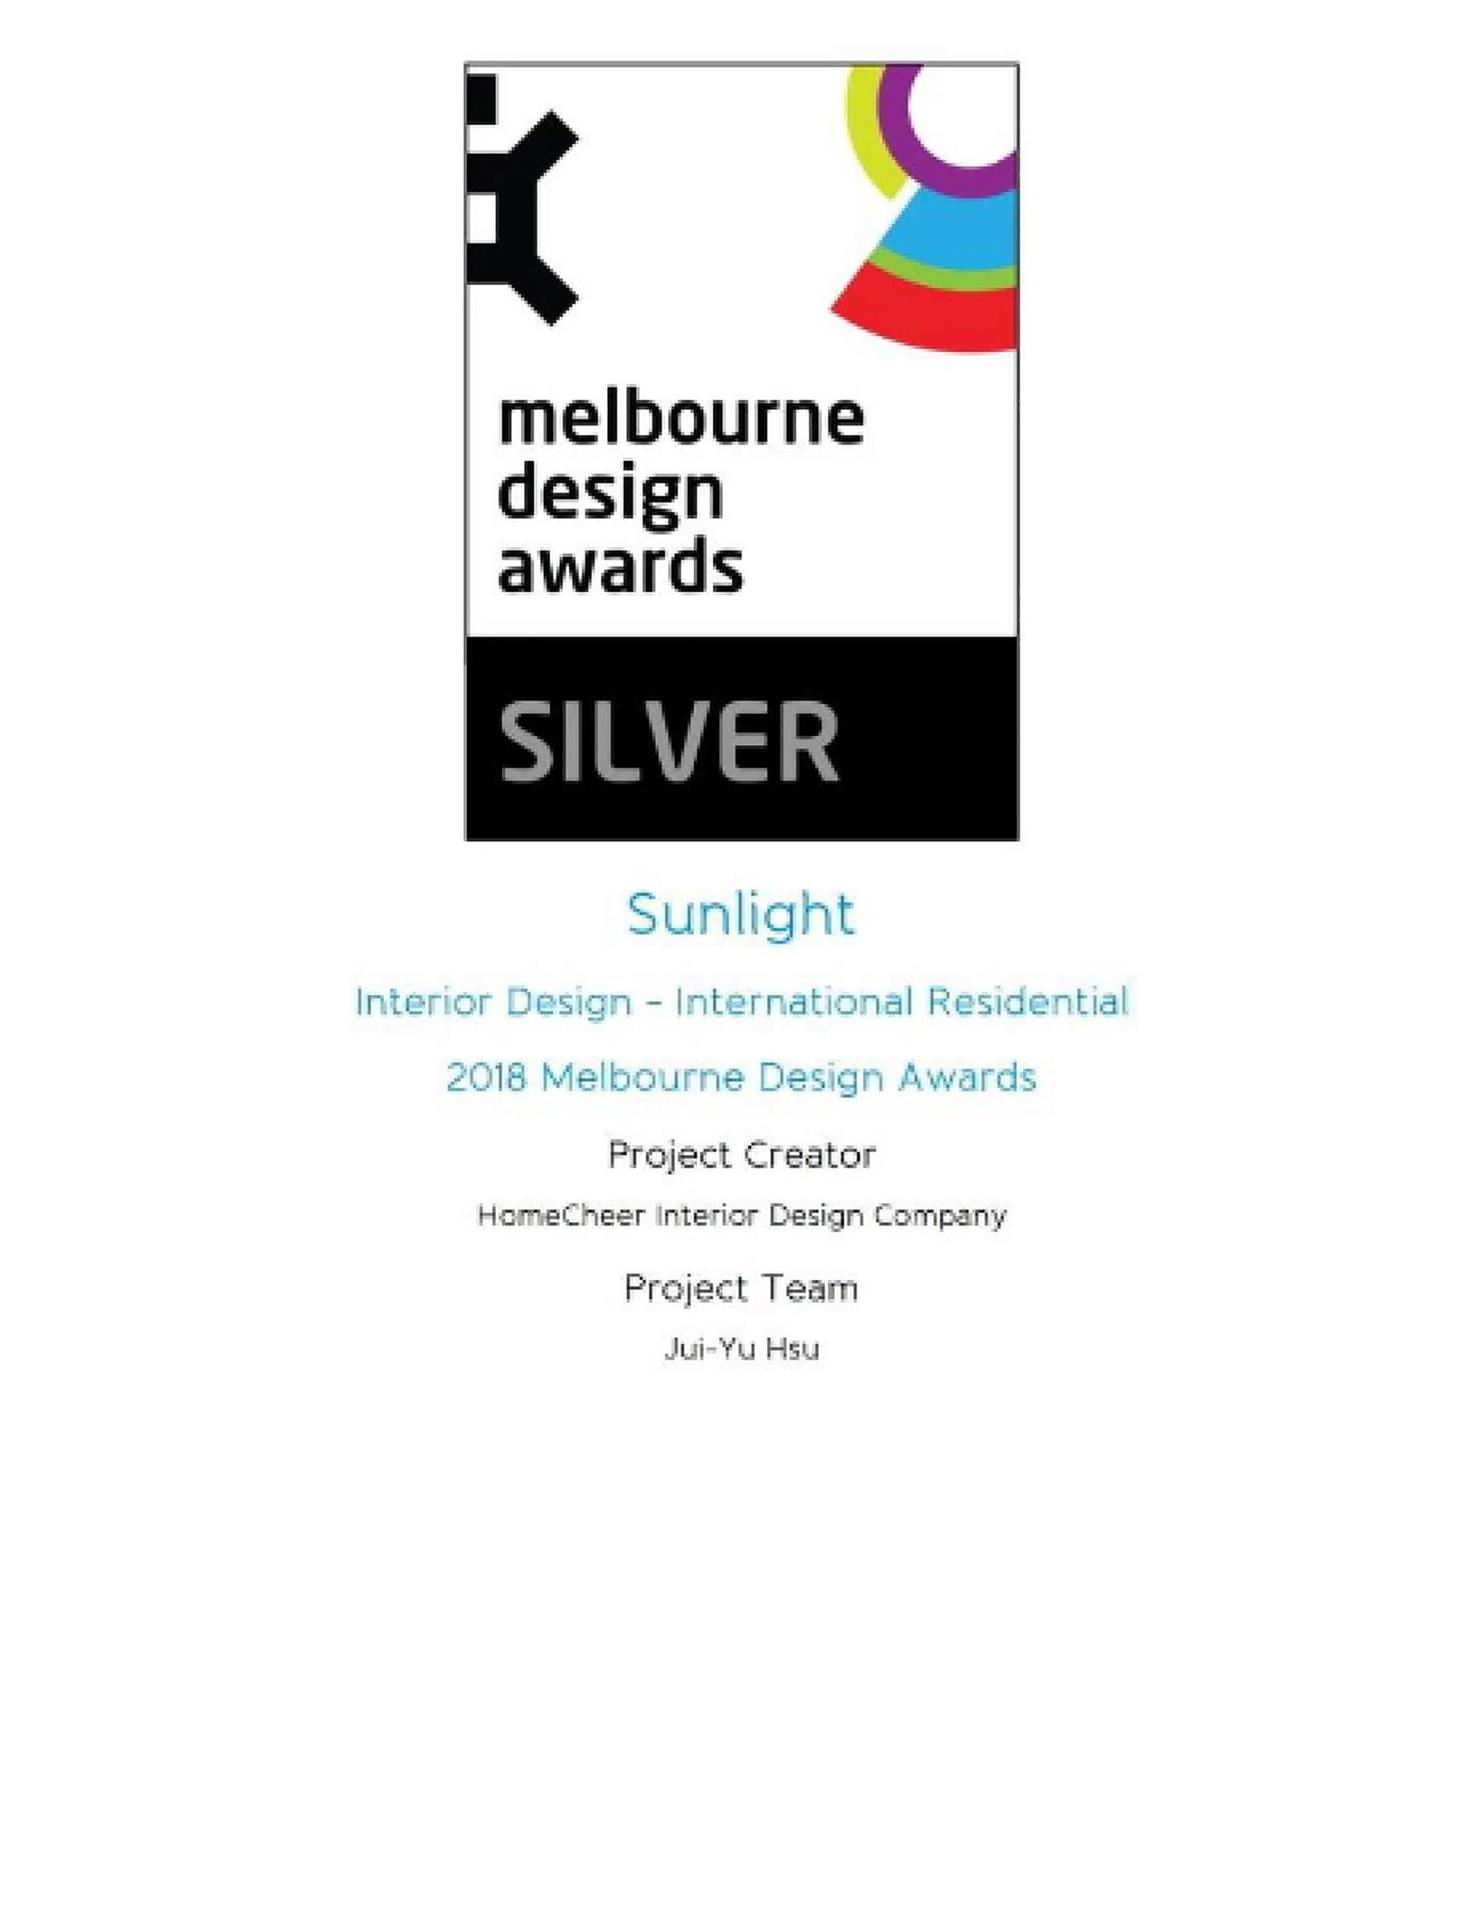 澳洲墨爾本設計大賽Melbournne Design雙銀獎